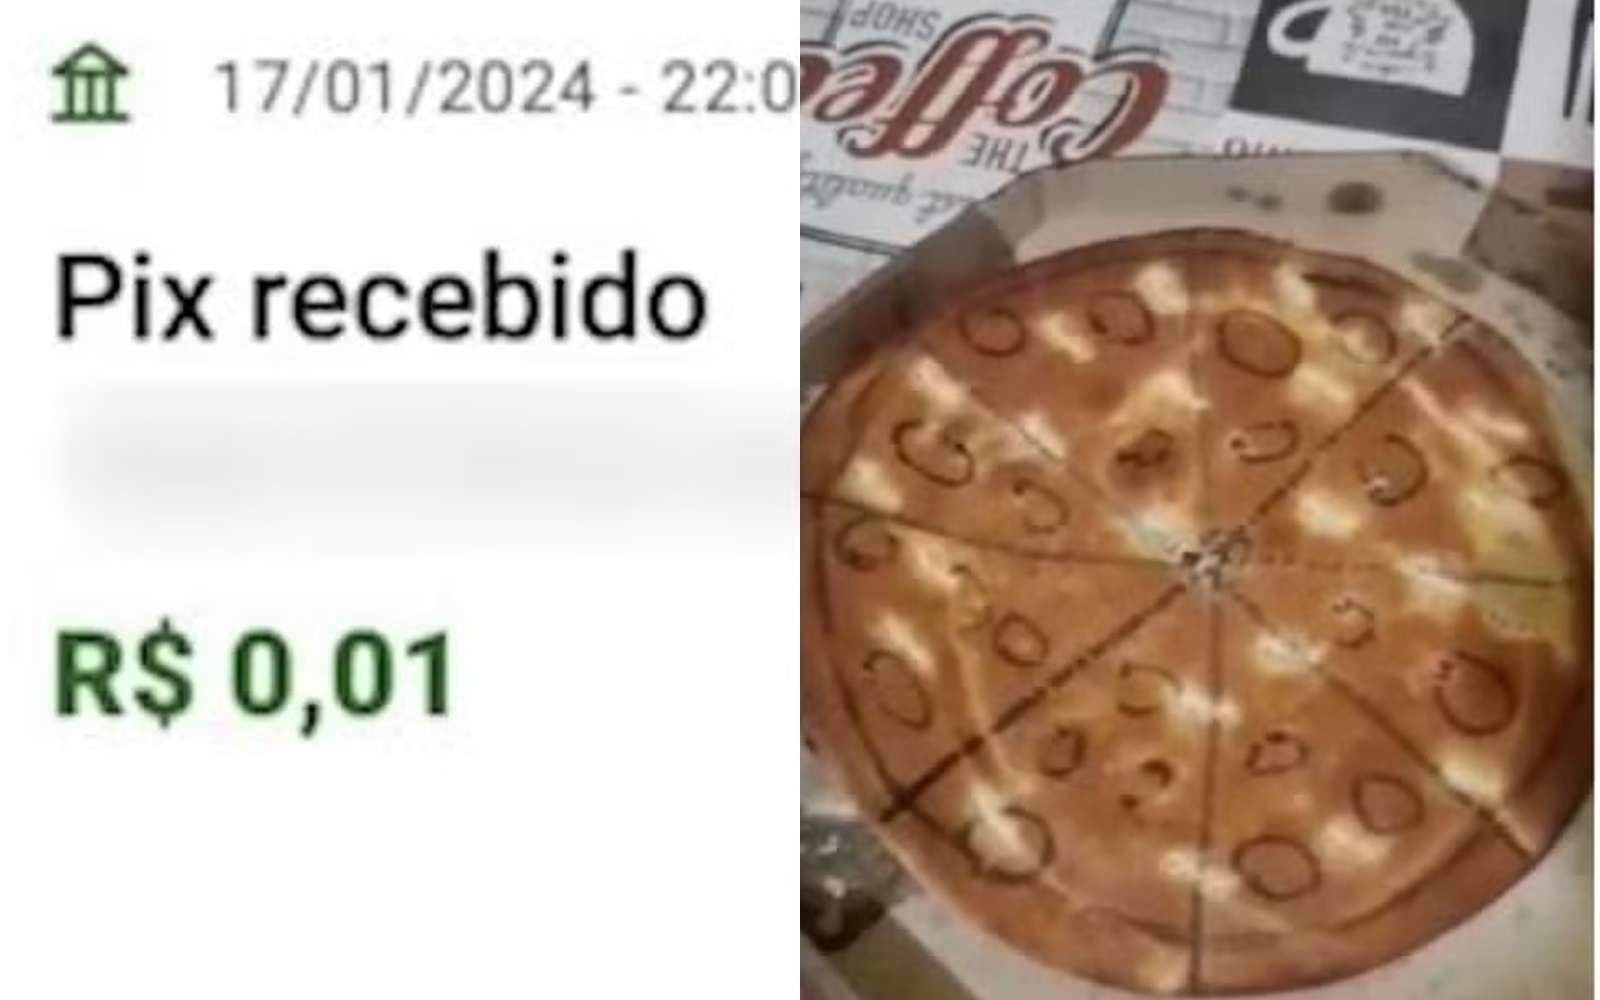 Pizzaria entrega pizza de papelão a cliente que fez Pix de um centavo e enviou comprovante falso